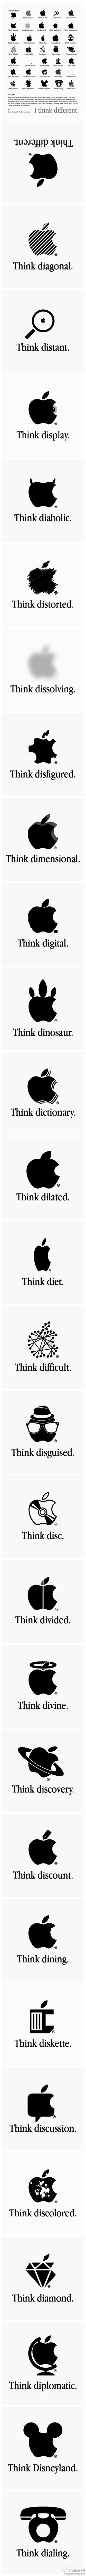 #求是爱设计#苹果LOGO变异混搭海报。...